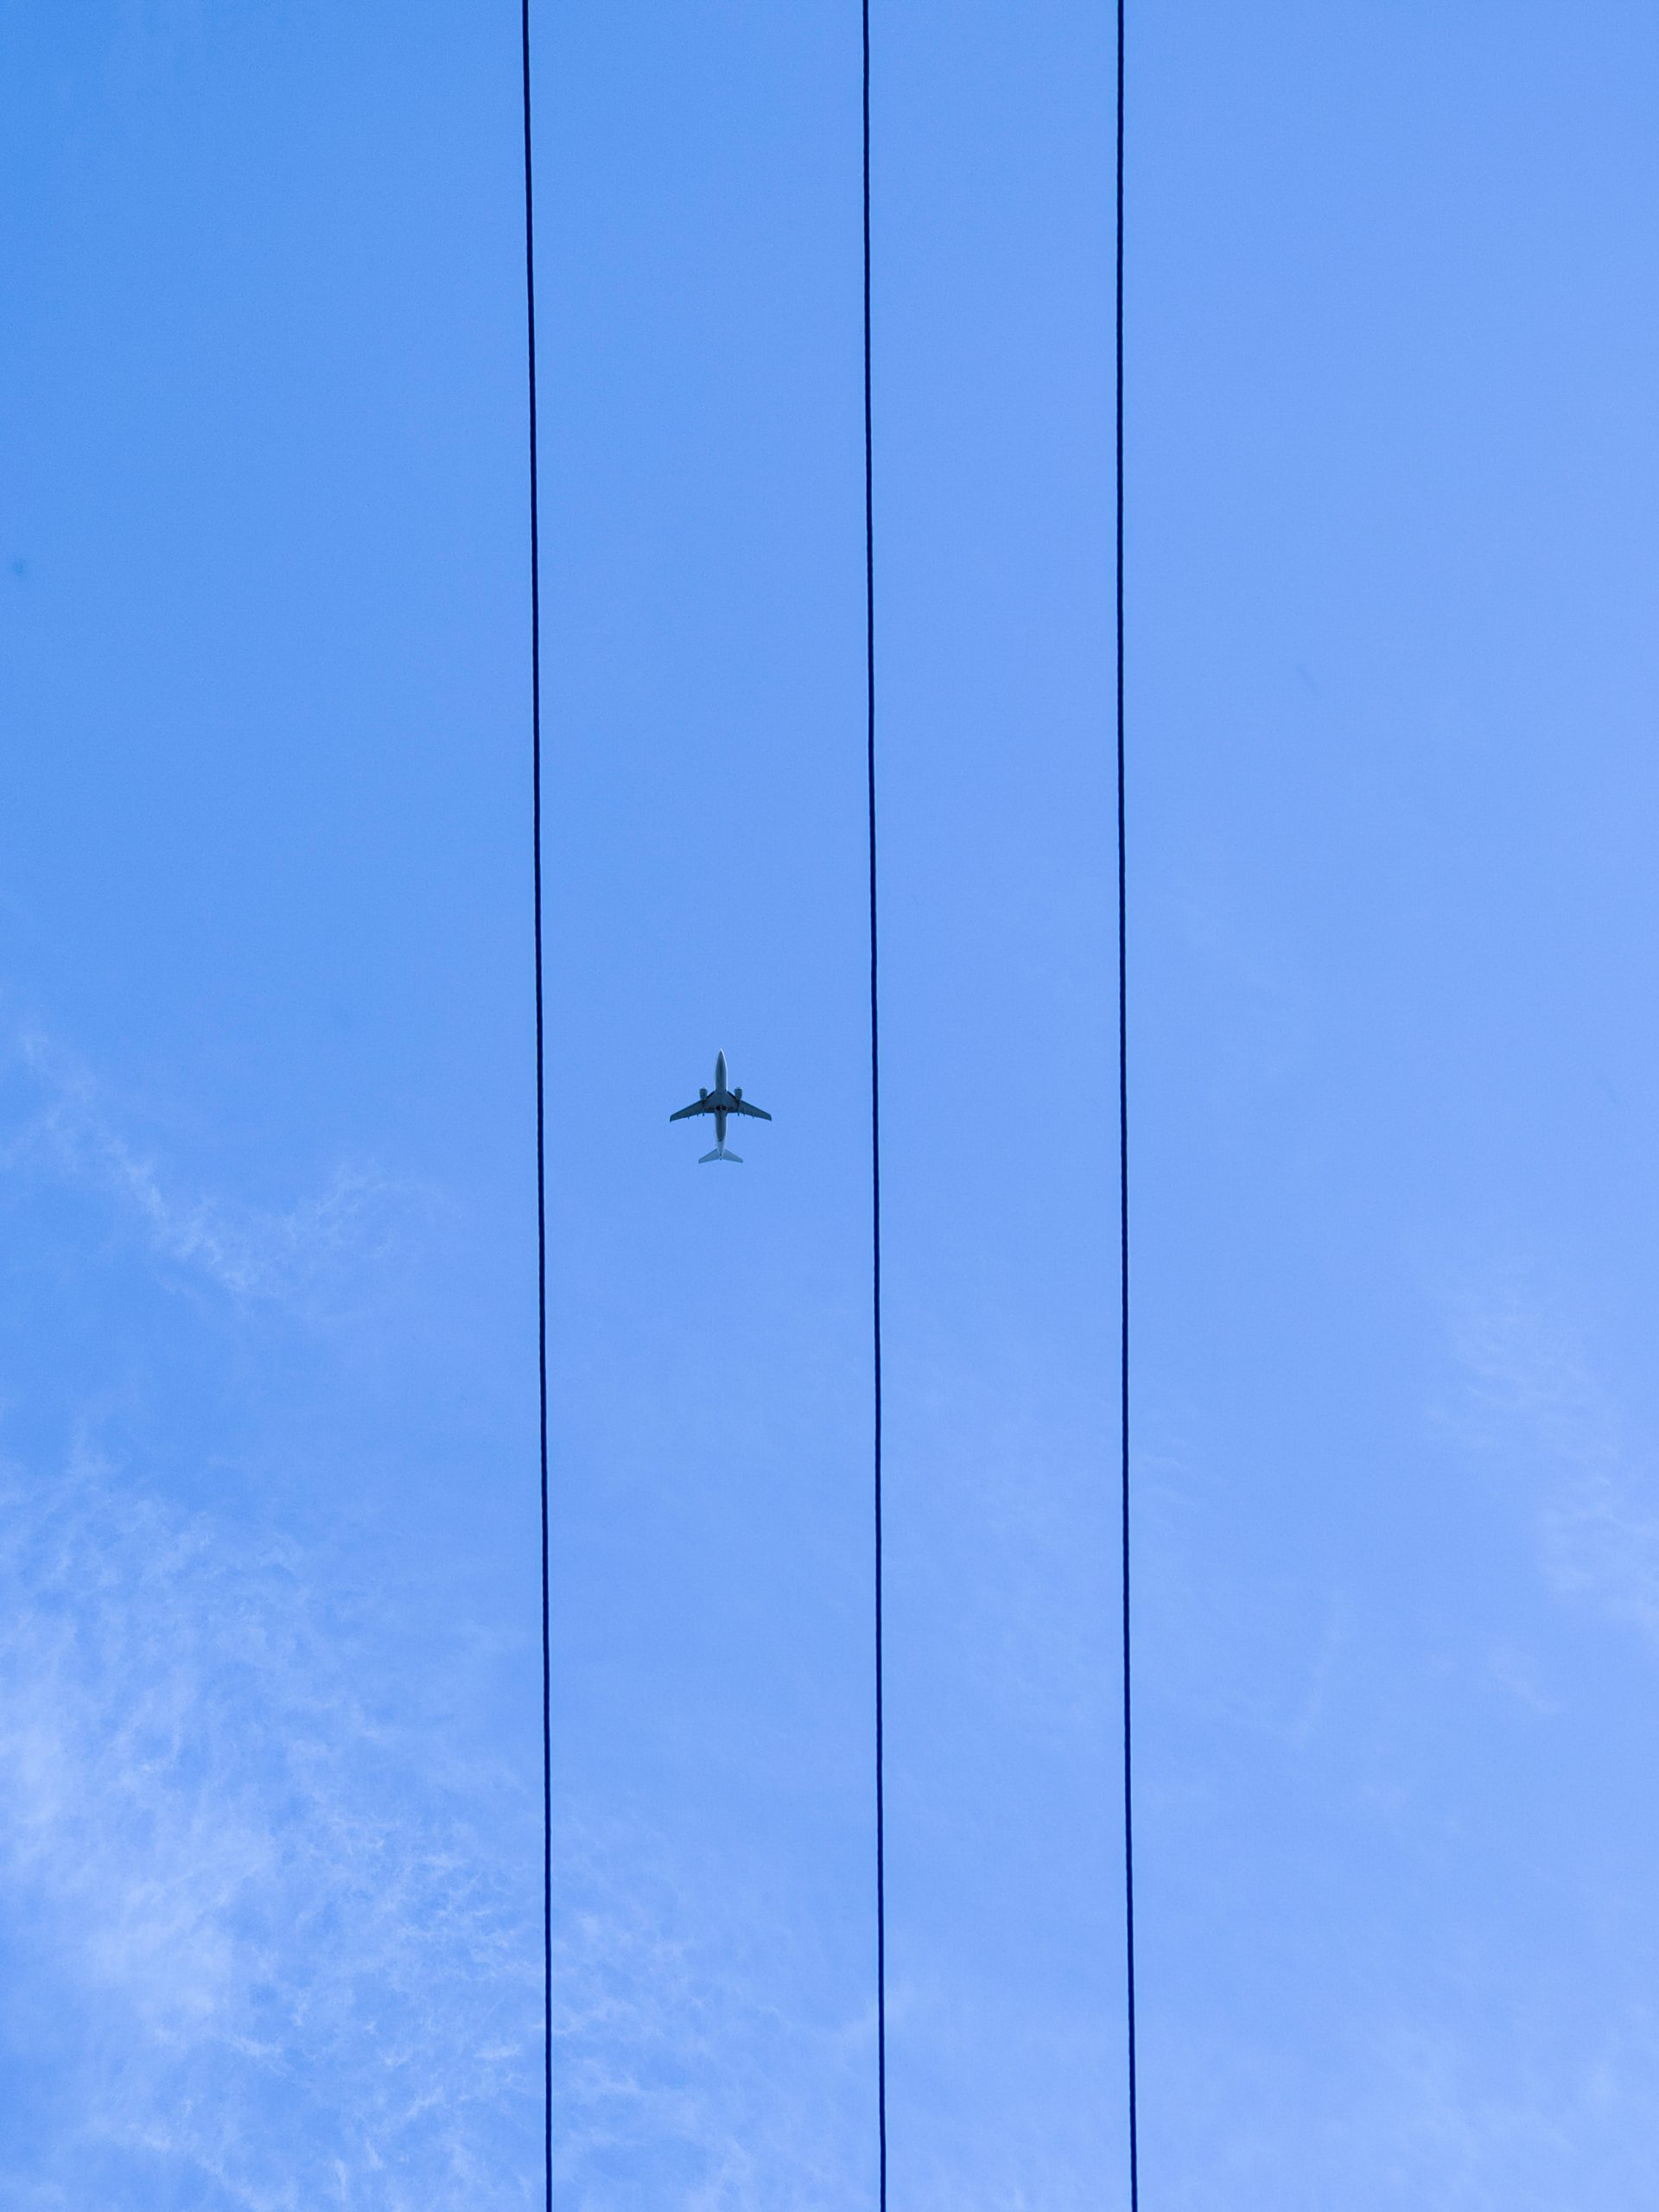 Air plane in a sky